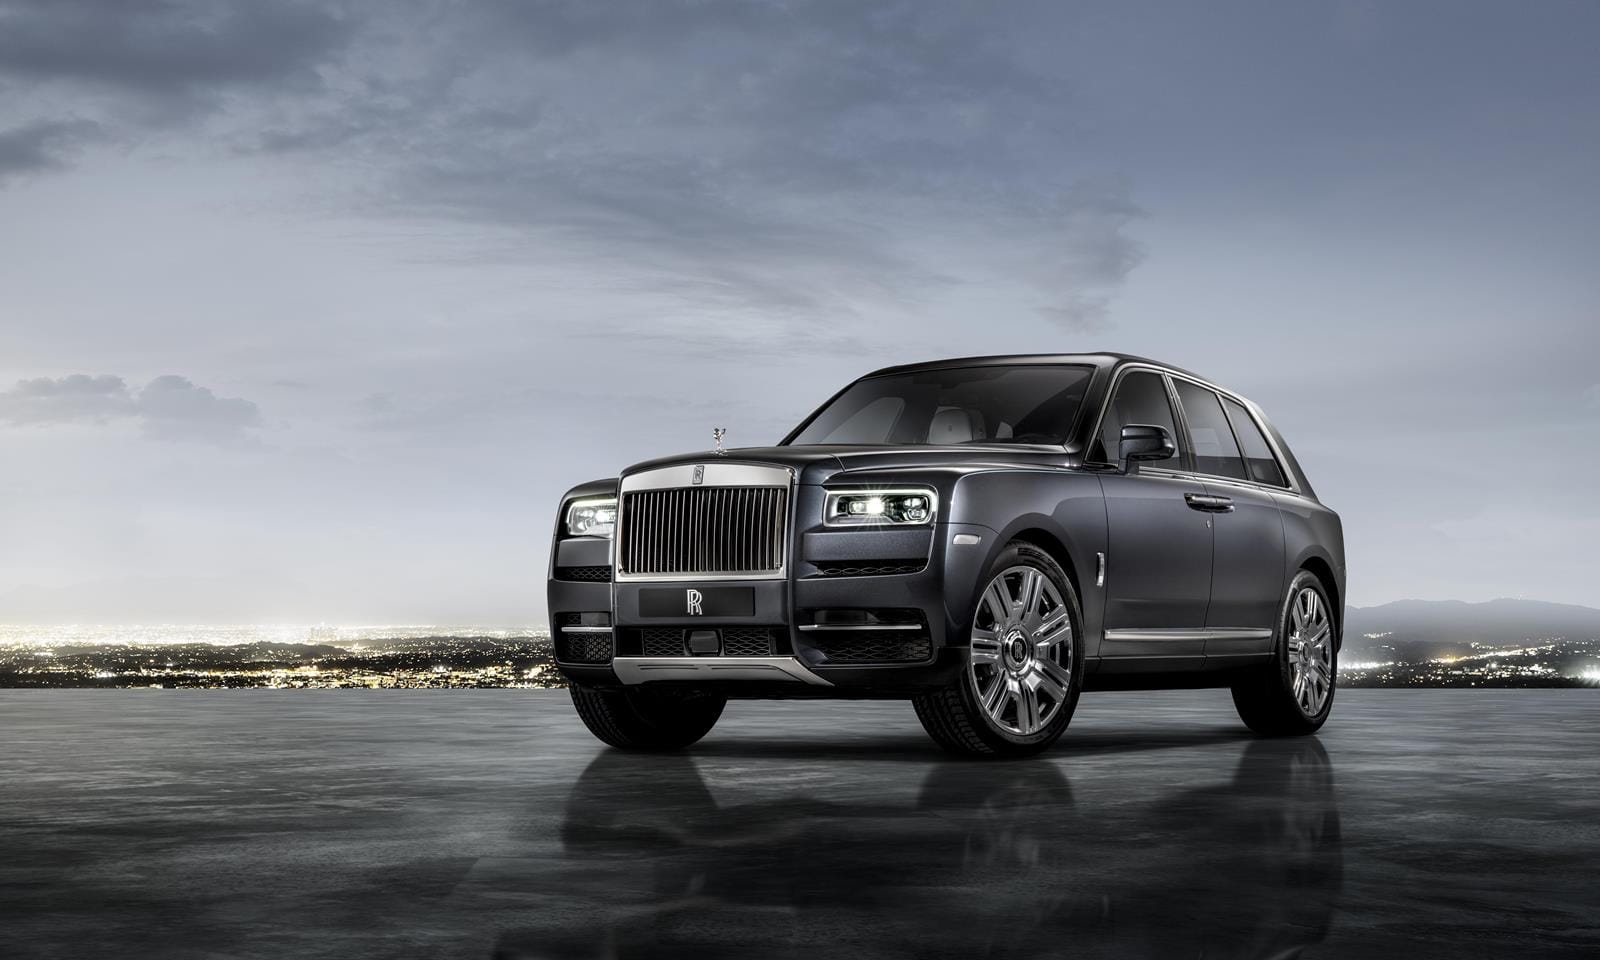 Chi tiết Rolls-Royce Cullinan 2021, Tham vọng thống trị SUV hạng sang